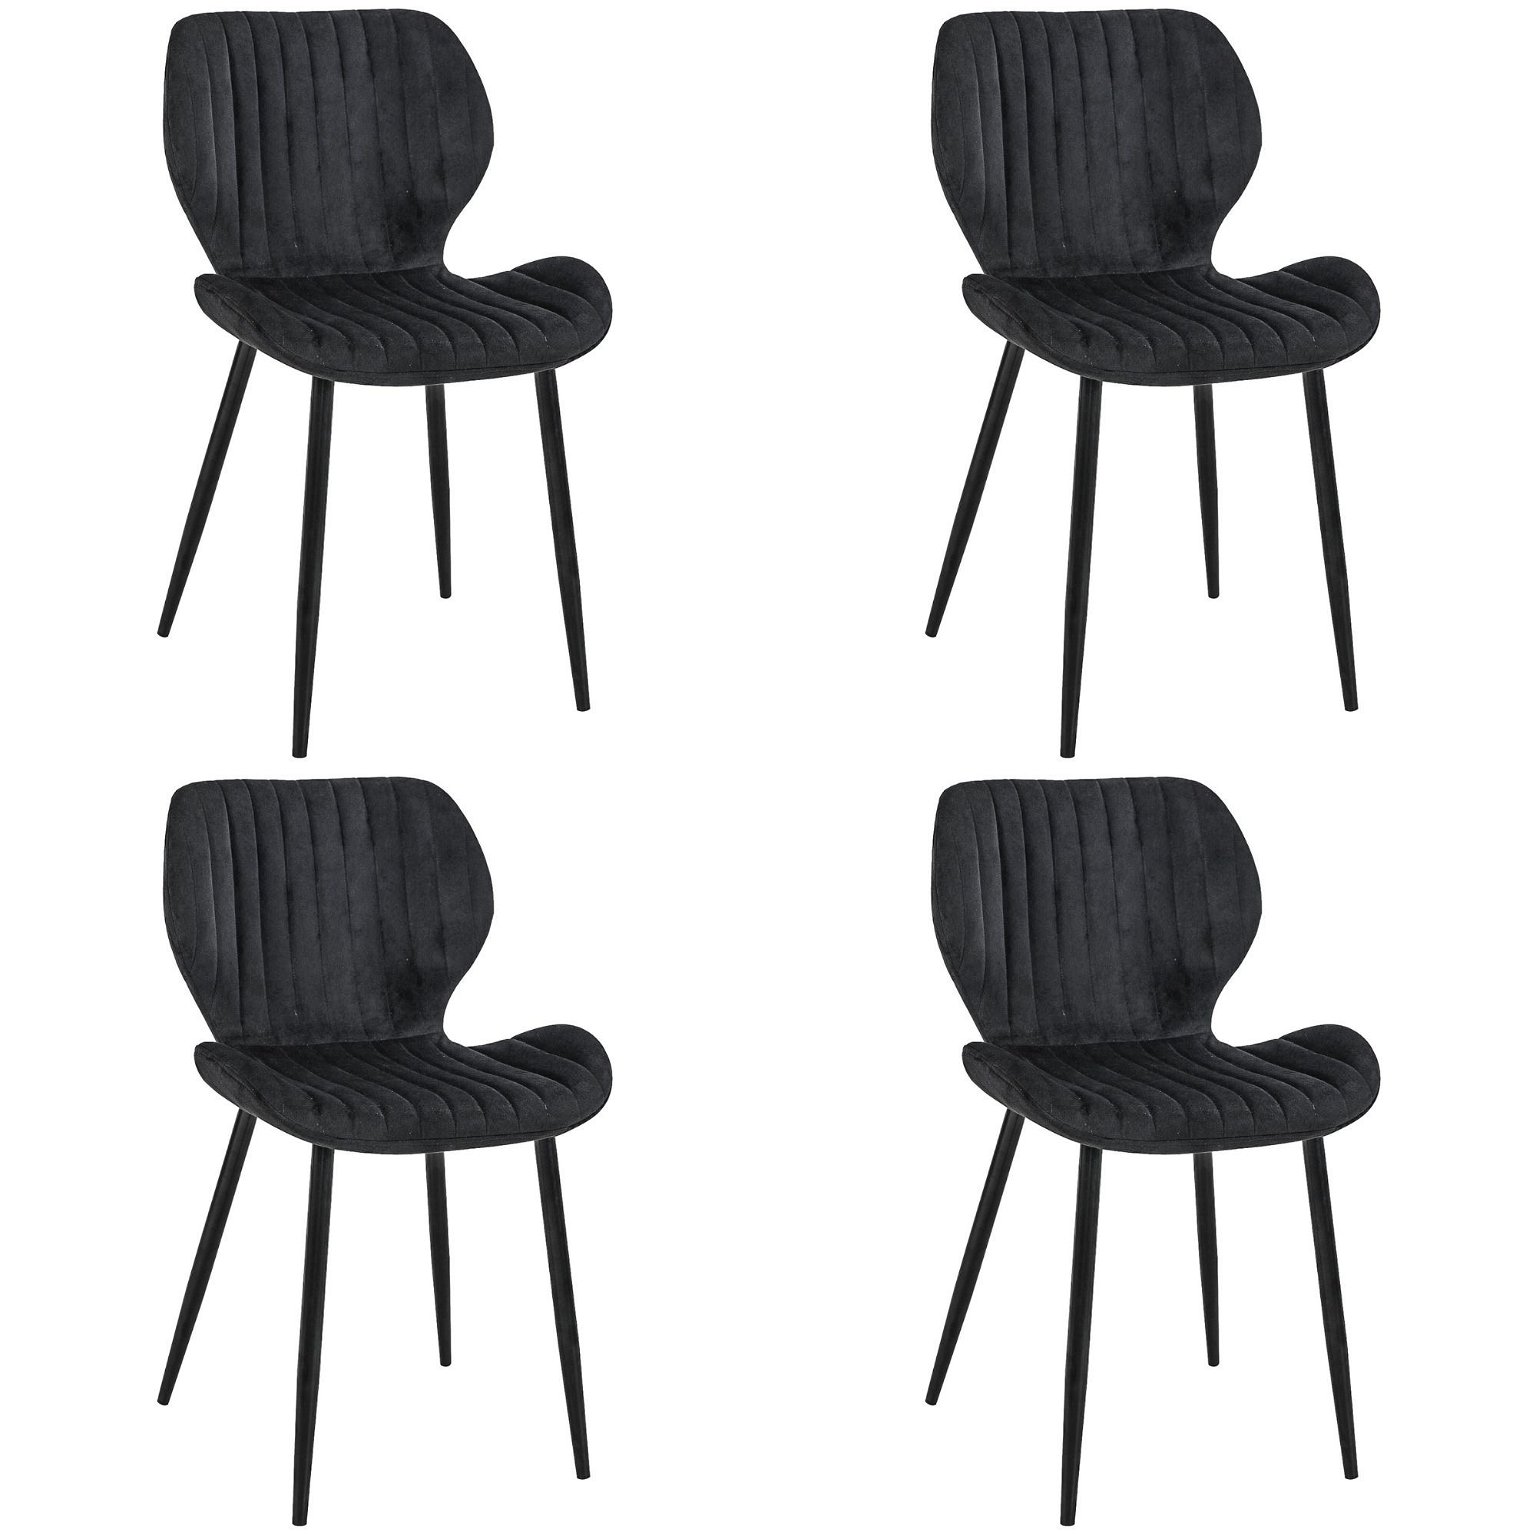 4-ių kėdžių komplektas SJ.17, juoda - 1